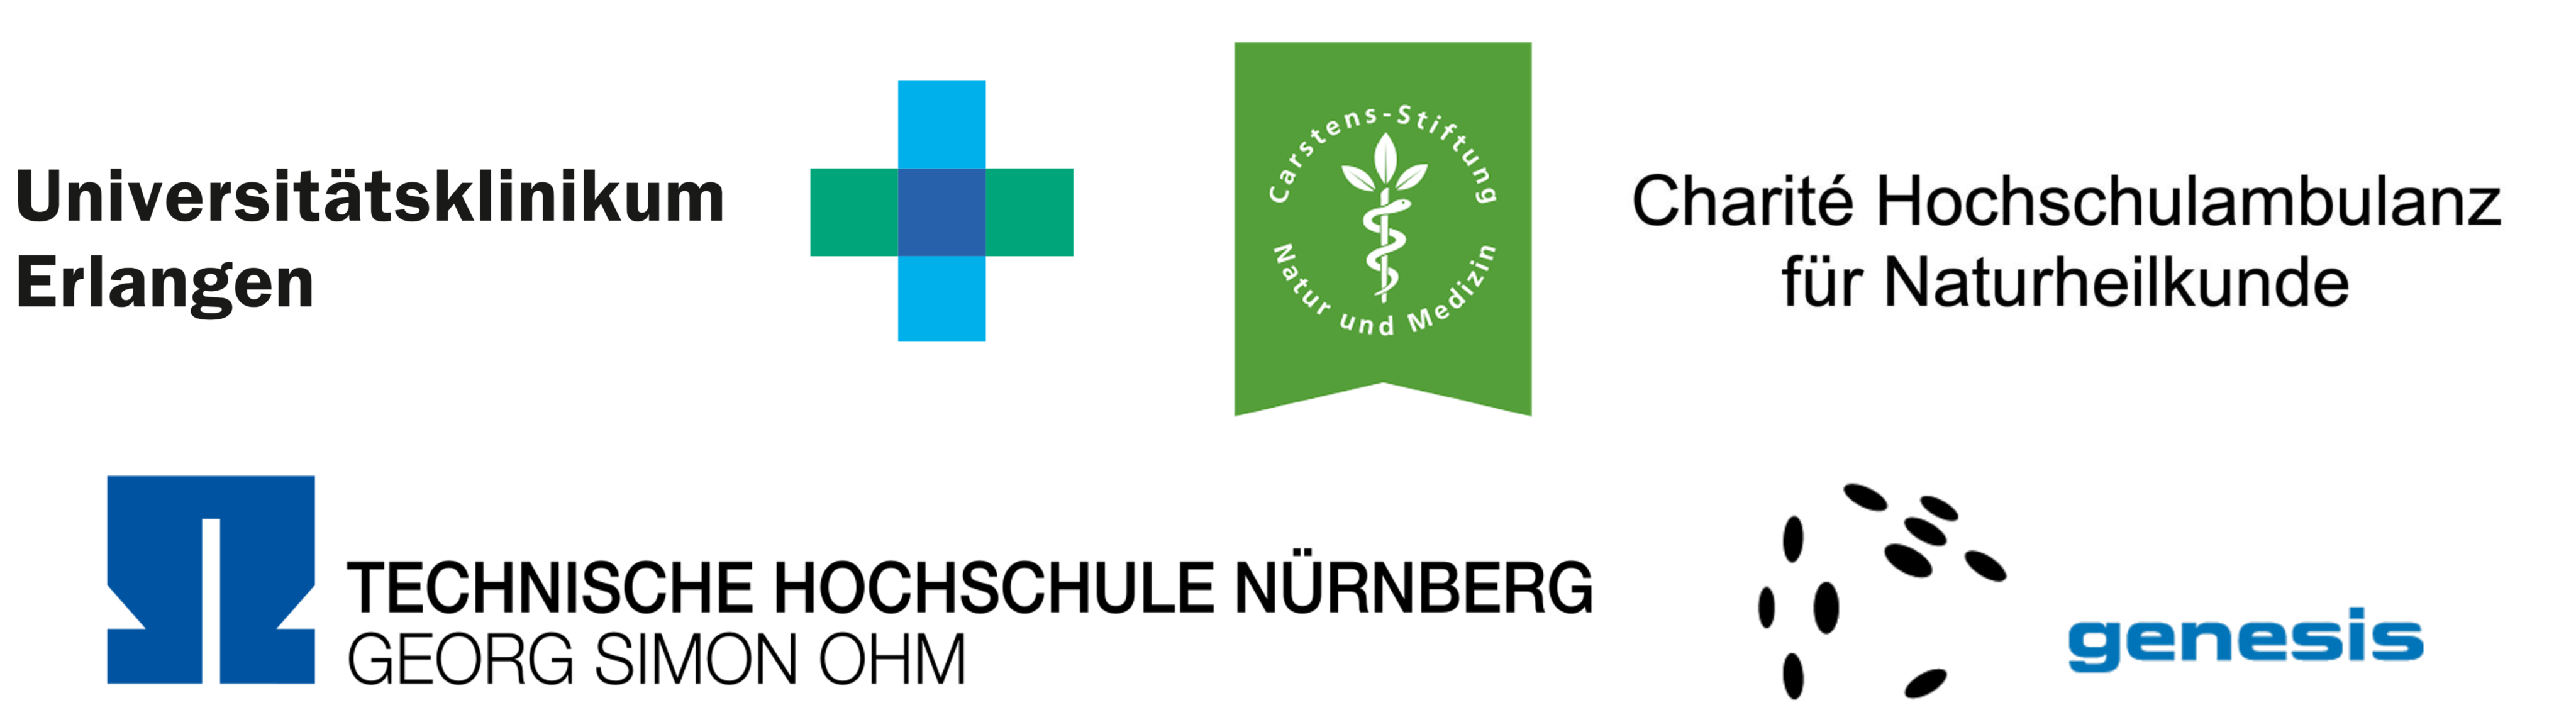 Diese Darstellung zeigt die Logos von: UK Erlangen, Carstens Stiftung, TH Nürnberg und genesis; sowie den Schriftzug "Charité Hochschulambulanz für Naturheilkunde".